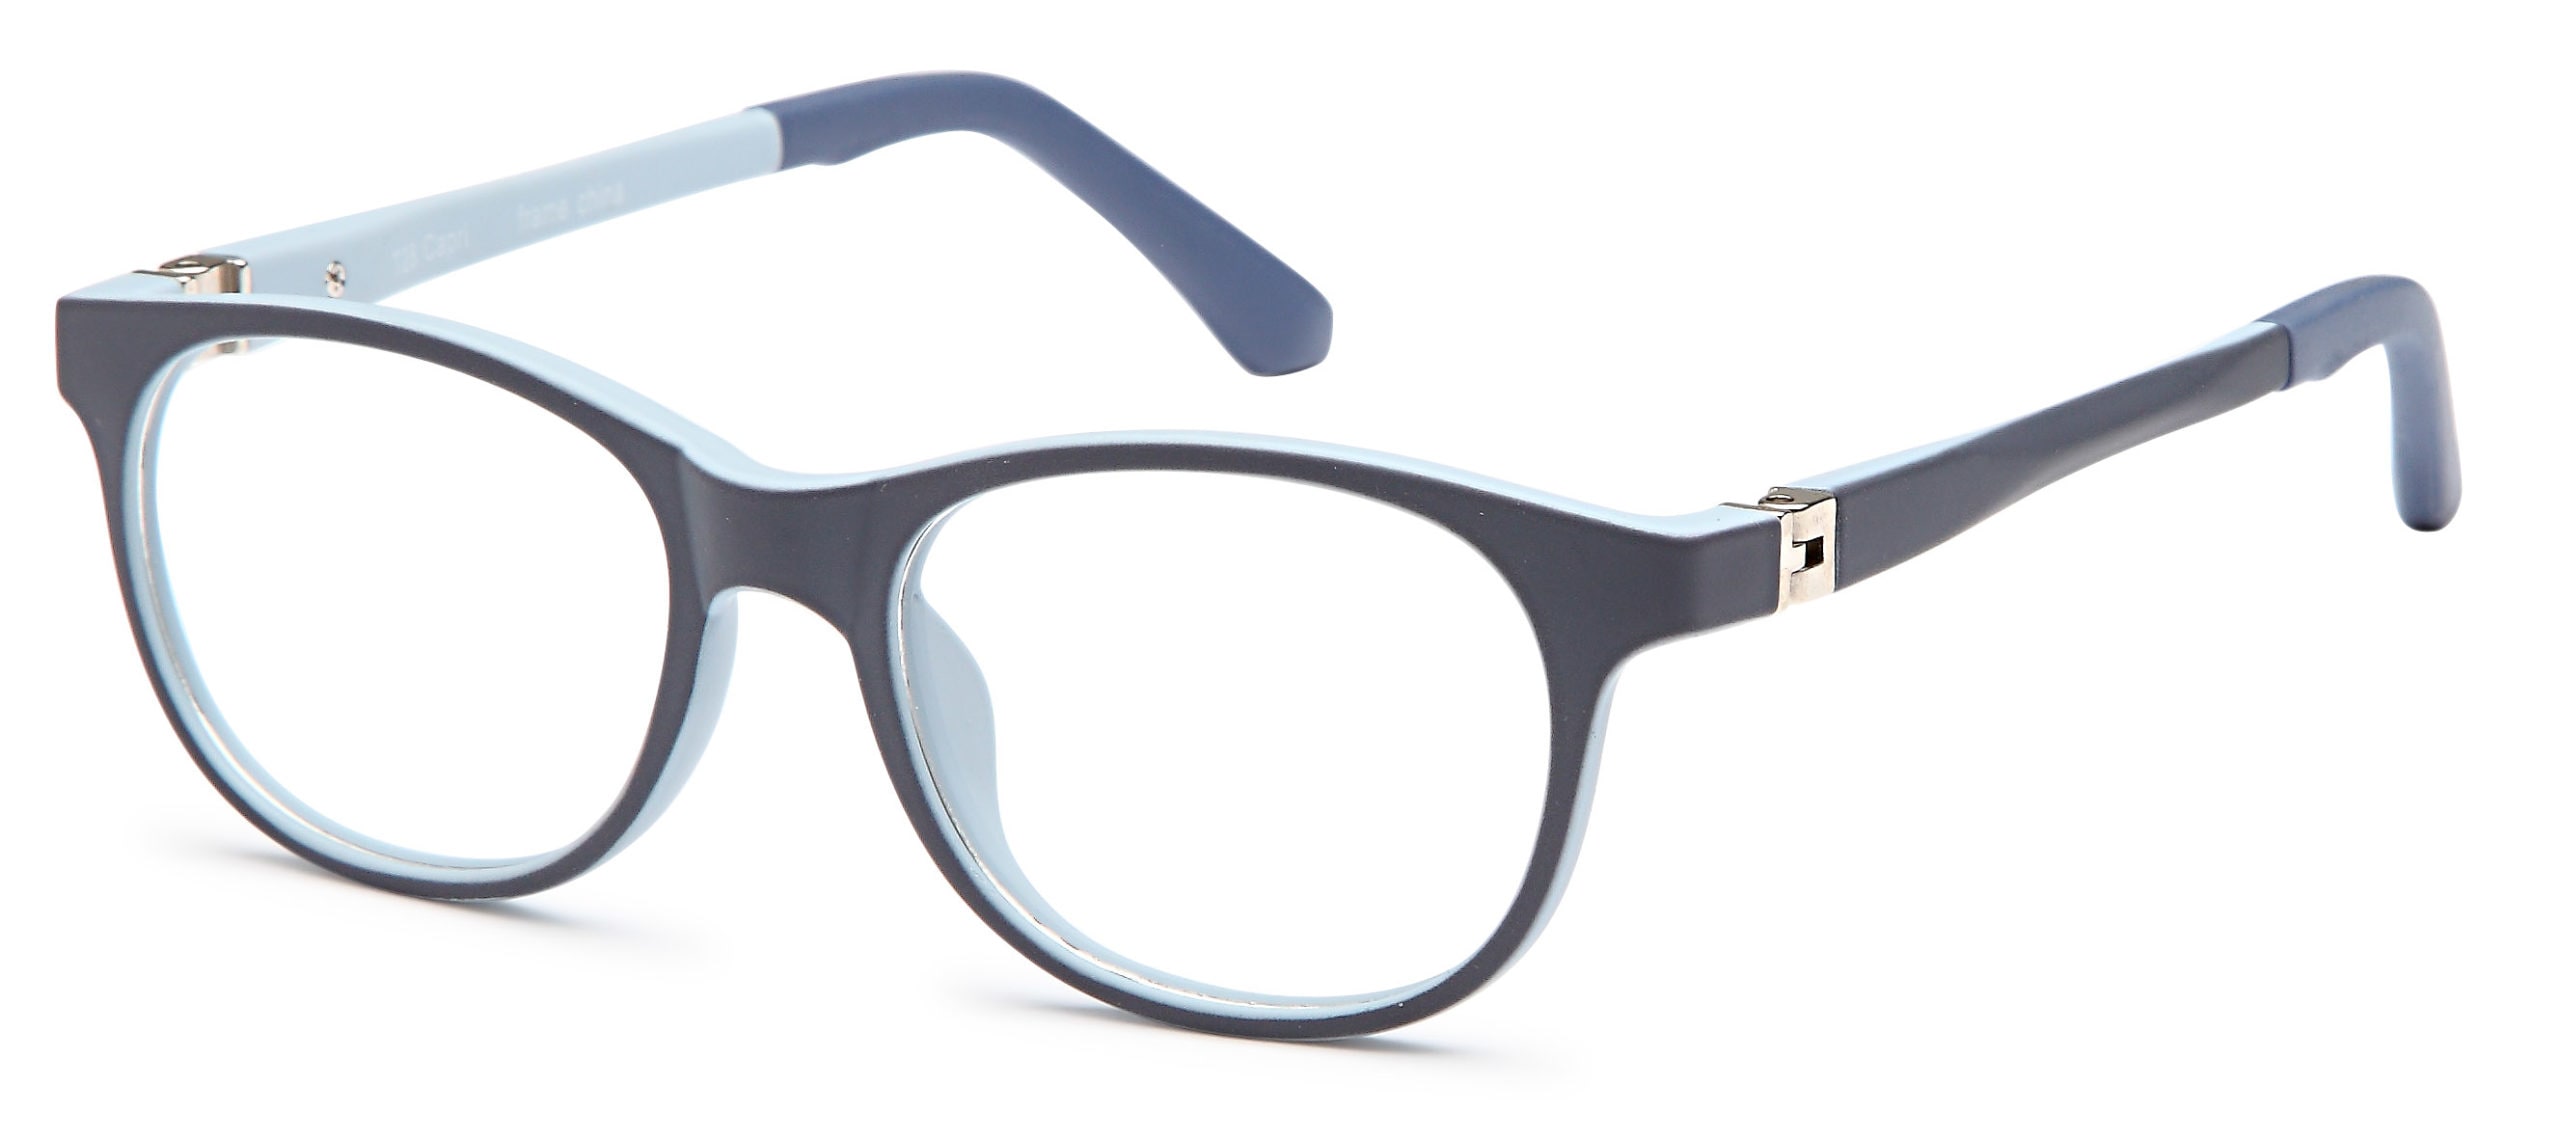 Capri T28 Eyeglasses Frame